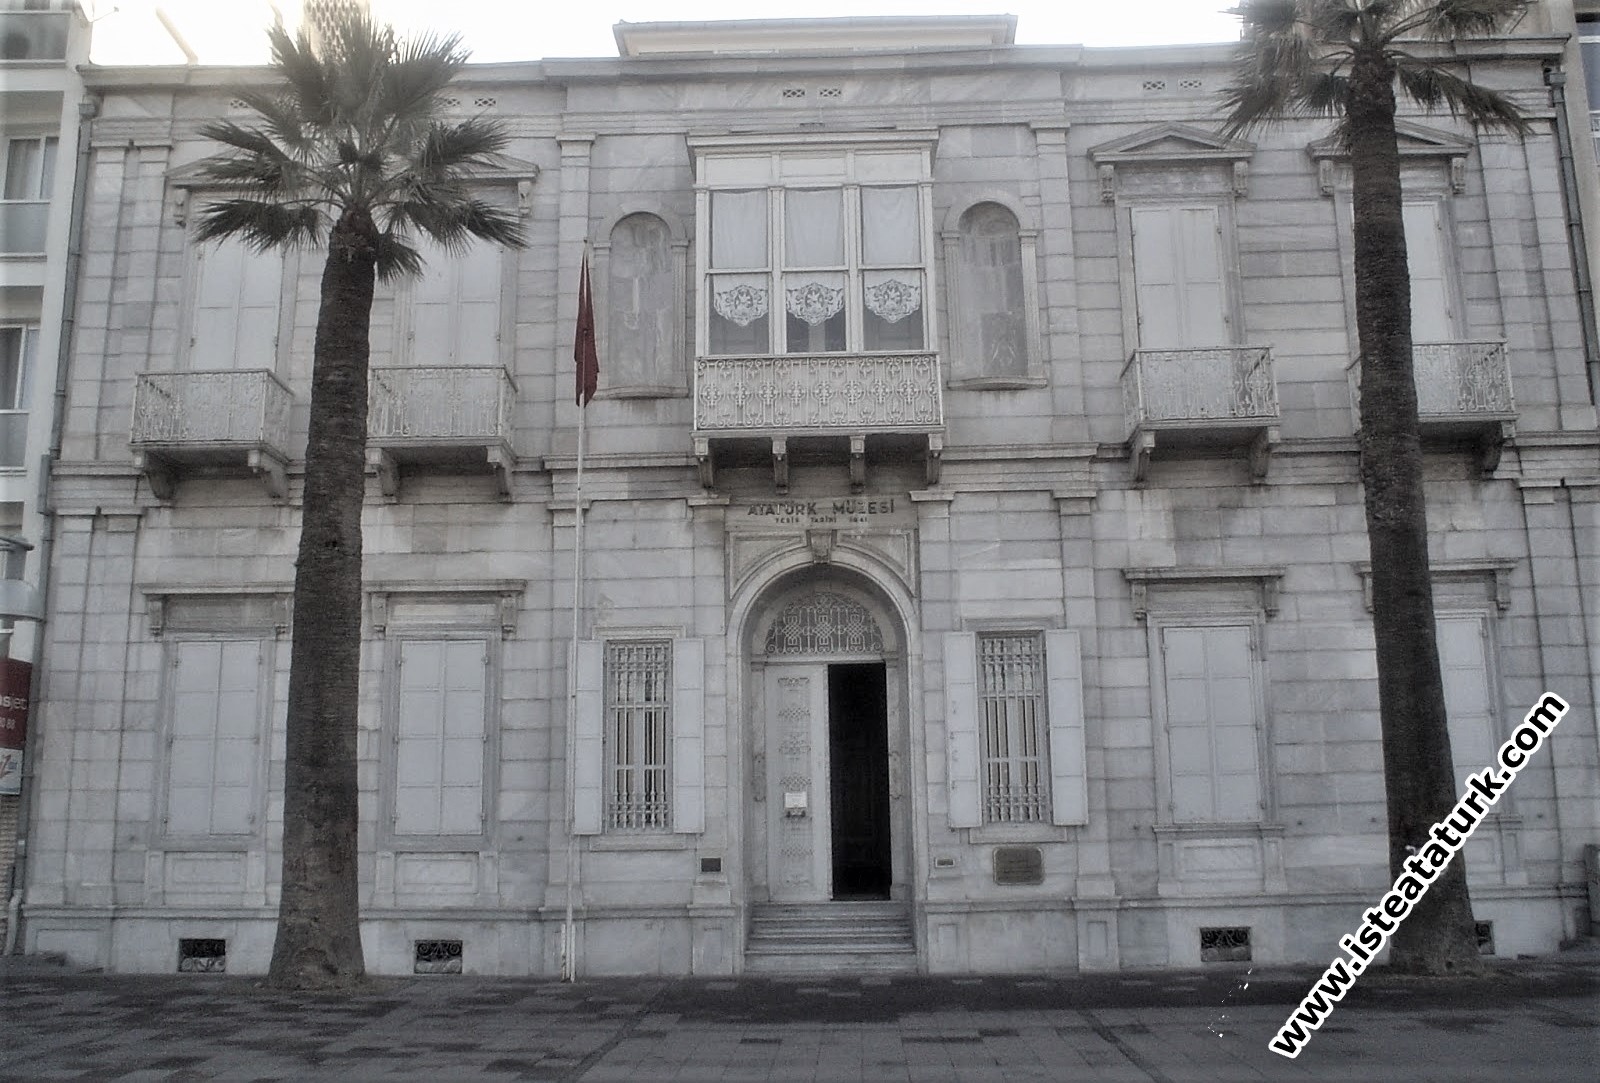 1880 yılında inşa edilmiş olan Atatürk Müzesi, tarihi bir Osmanlı konağında hizmet veriyor. 1926 ılında İzmir Belediyesi tarafından satın alınarak Atatürk’e  armağan edildi. Atatürk’ün İzmir’e geldiği zamanlarda kaldığı bu konak Atatürk’ün vefatından sında 1941 yılında müzeye çevrildi ve halka açıldı.